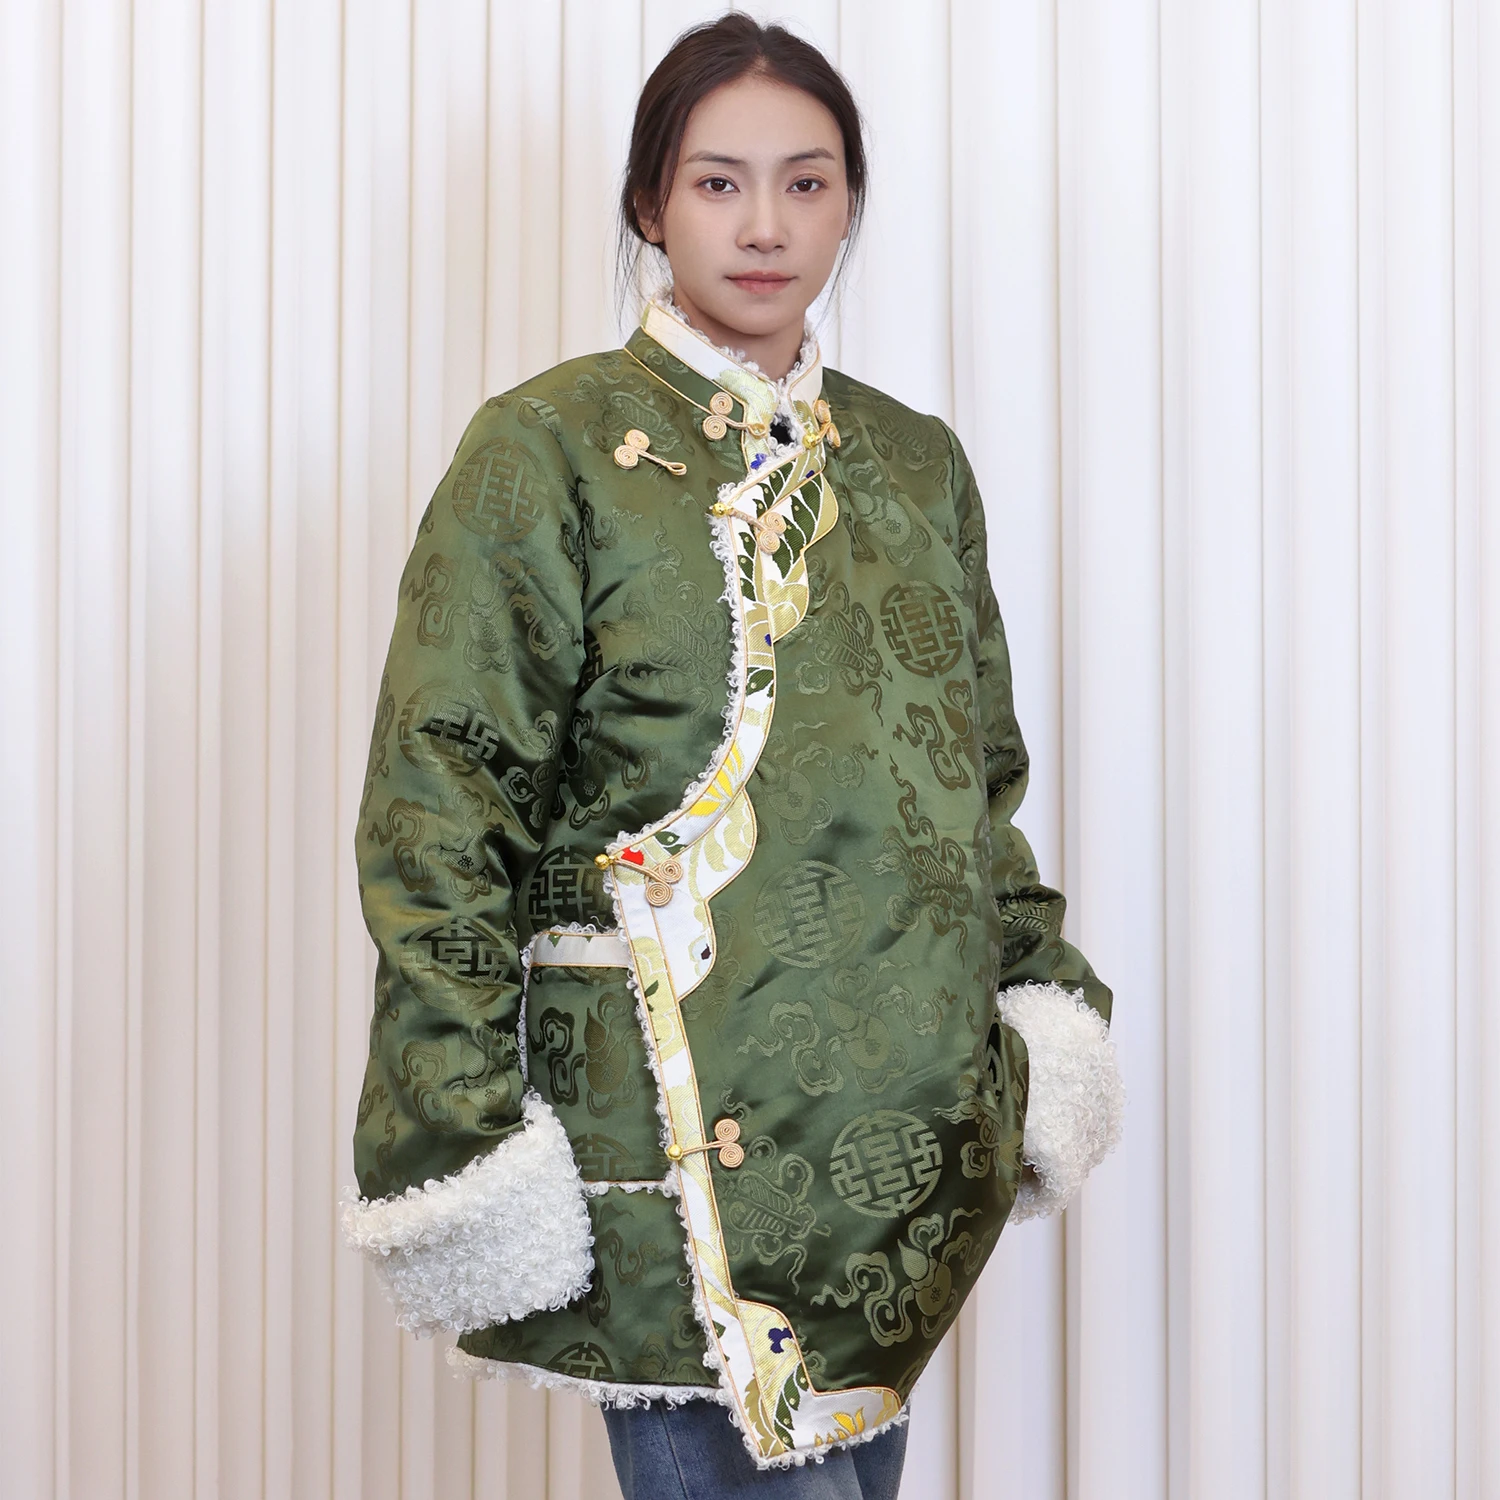  Зеленый Топ Зимнее пальто с хлопковой подкладкой Женская утолщенная хлопковая подкладка Тибетская одежда День Повседневная одежда Куртка Изображение 3